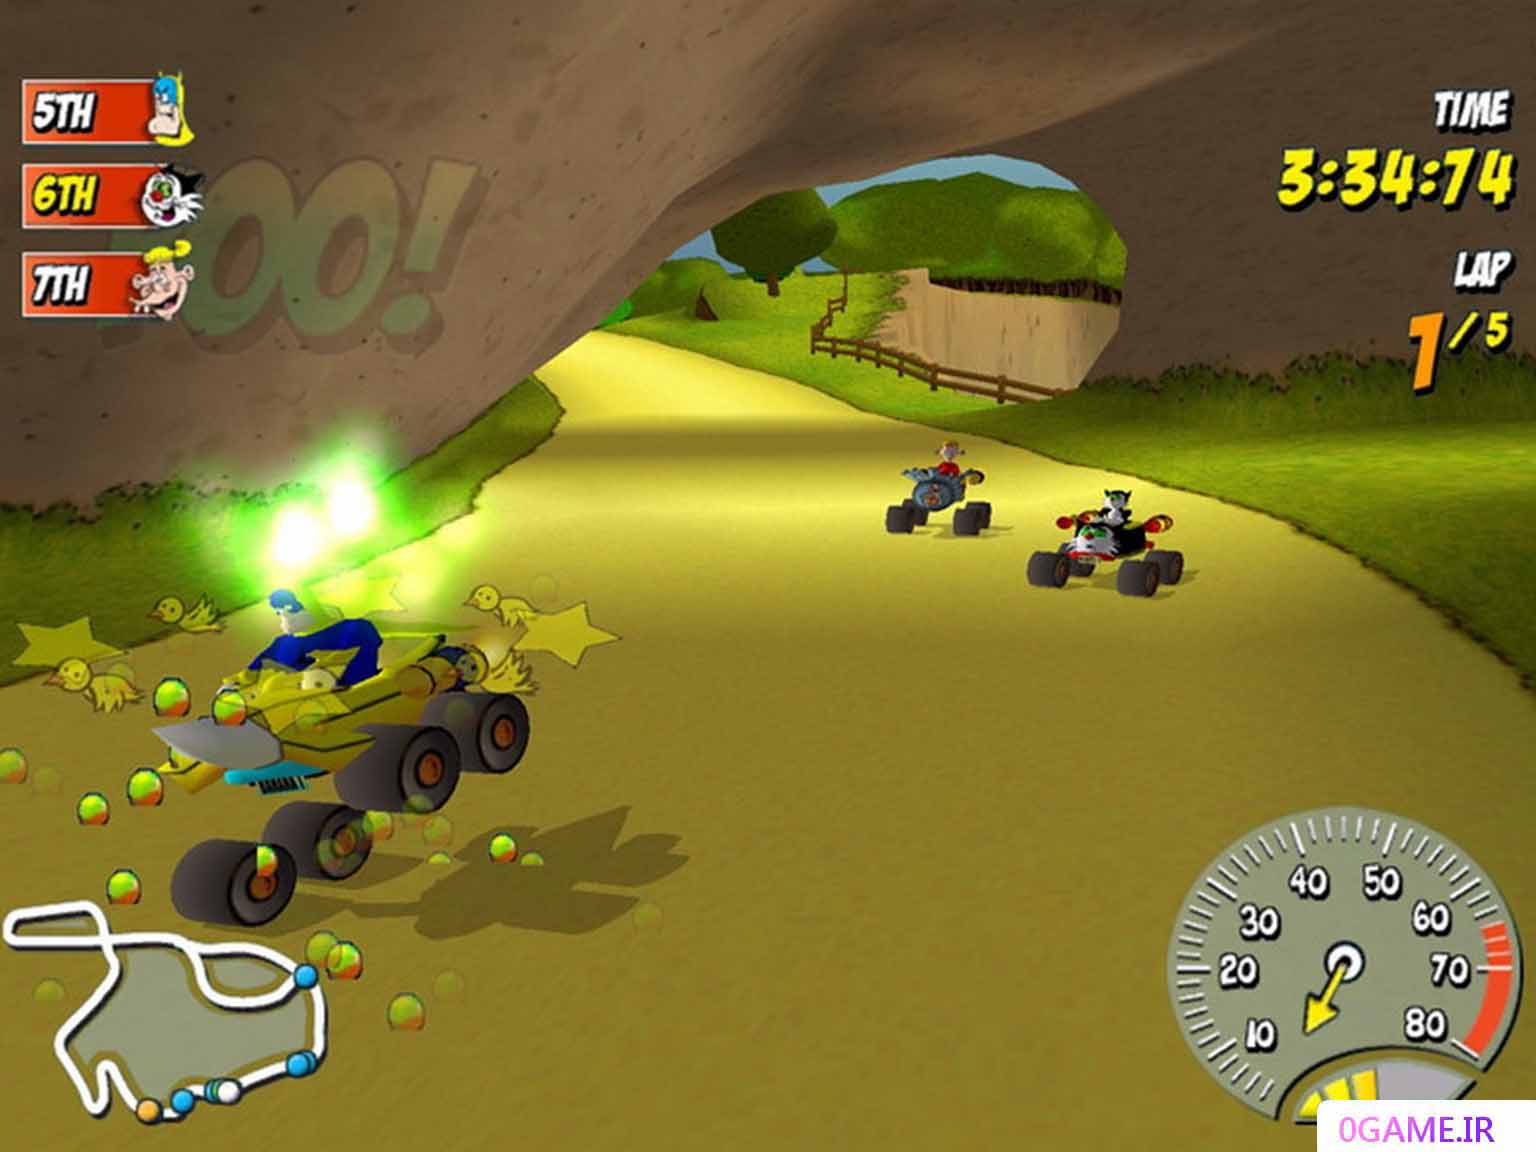 دانلود بازی بینوتاون ریسینگ (Beanotown Racing) نسخه کامل برای کامپیوتر